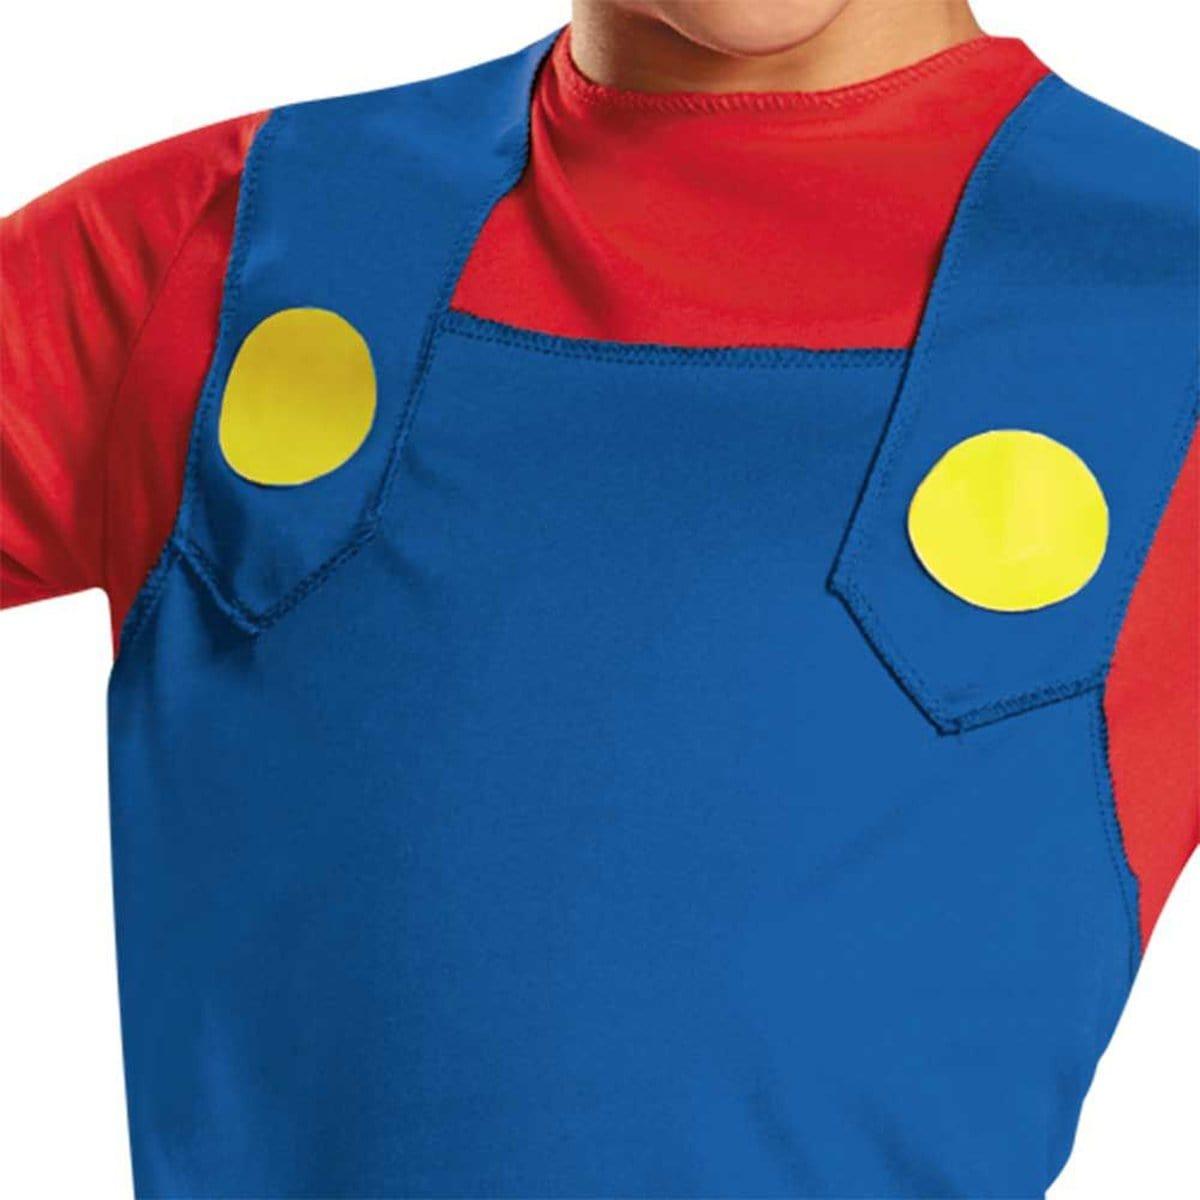 Super Mario Brothers Mario Costume Kit